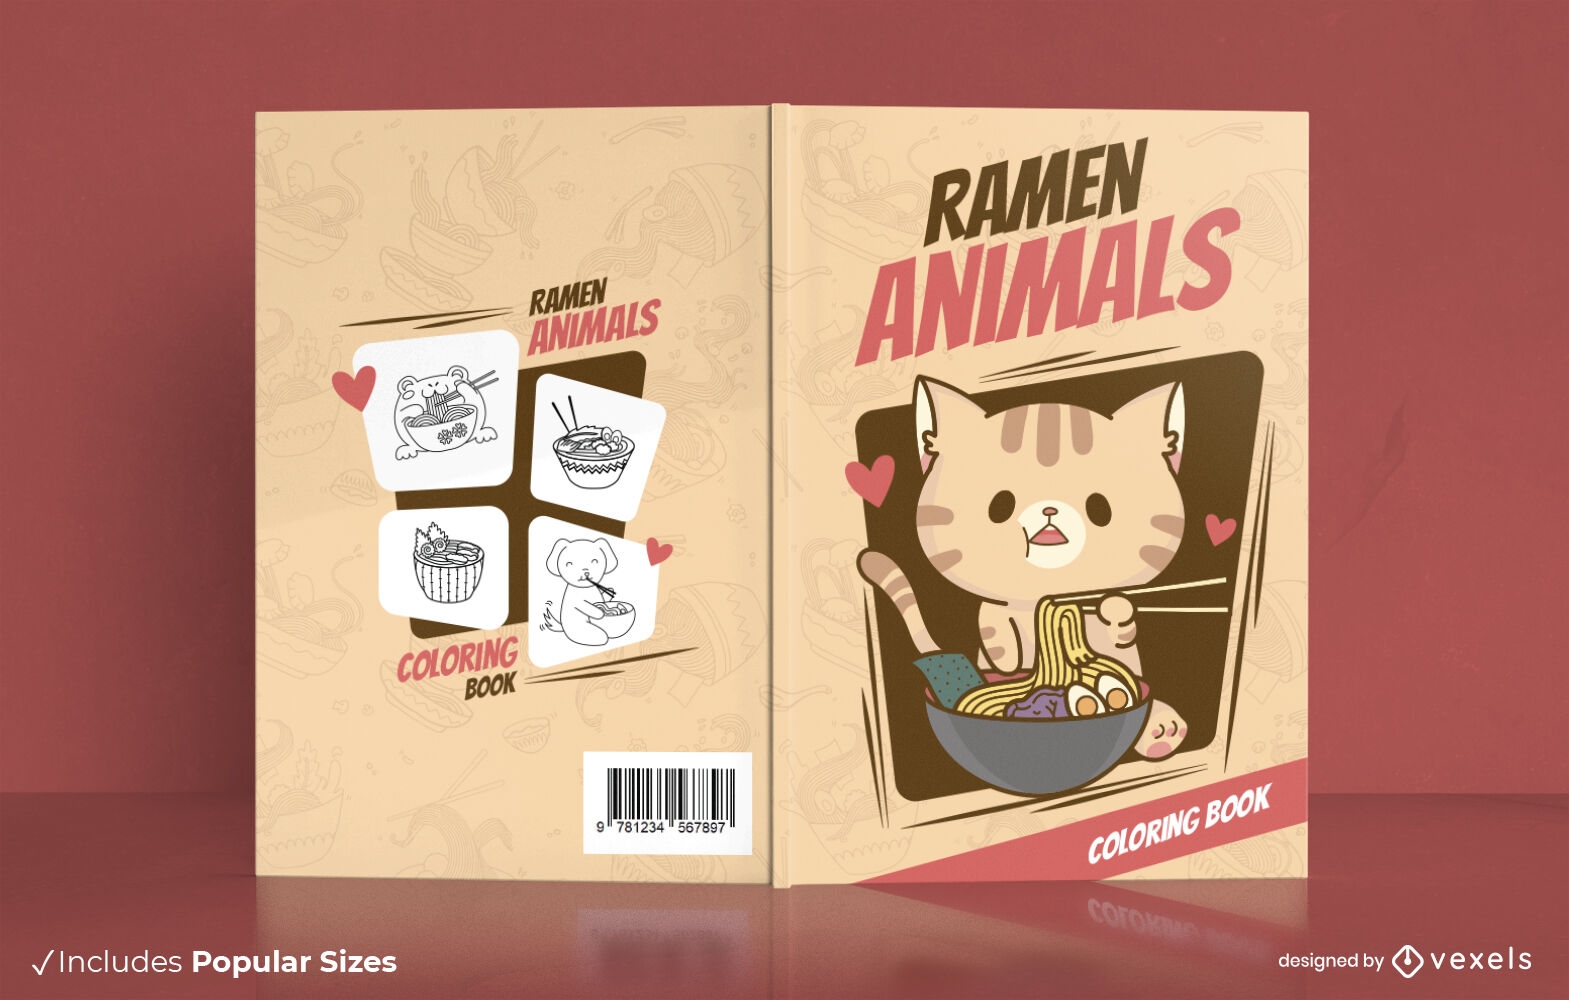 Cat eating ramen cute book cover design